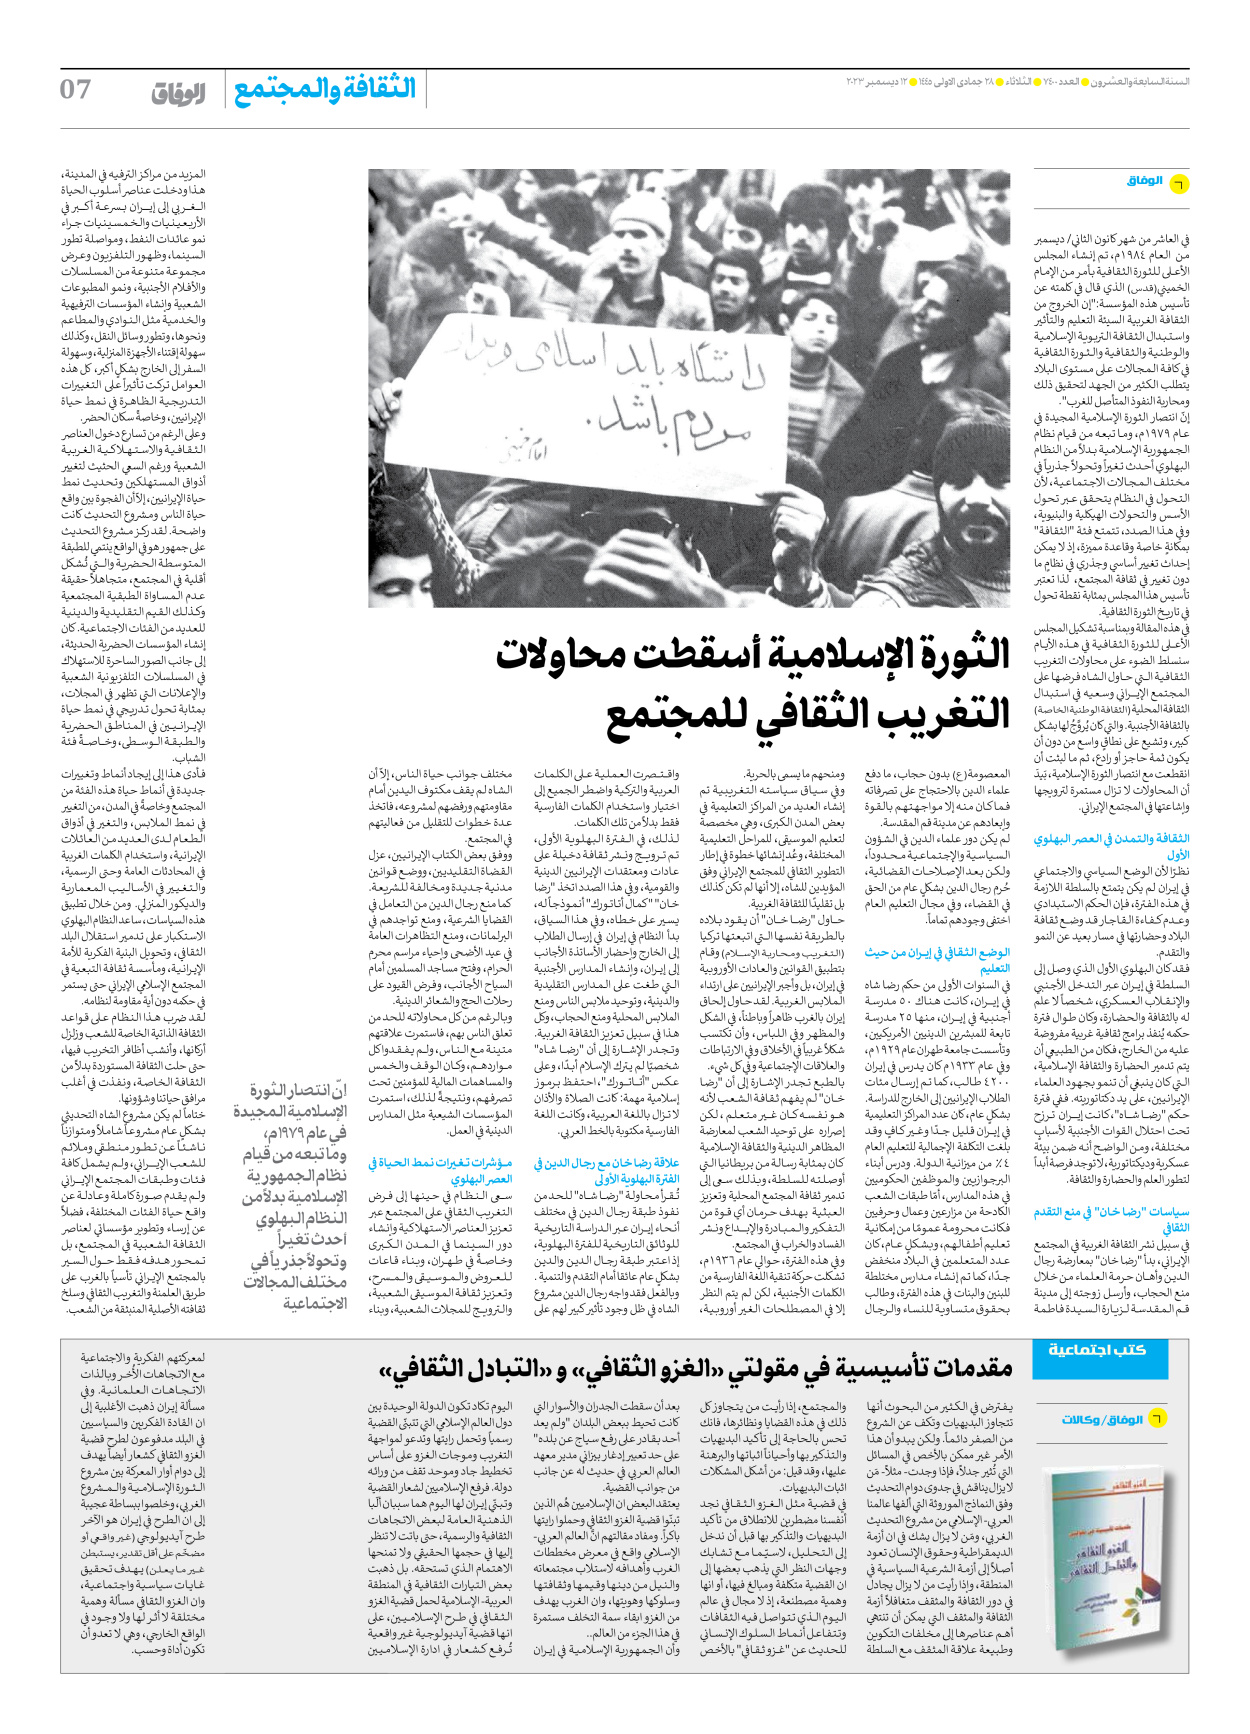 صحیفة ایران الدولیة الوفاق - العدد سبعة آلاف وأربعمائة - ١٢ ديسمبر ٢٠٢٣ - الصفحة ۷